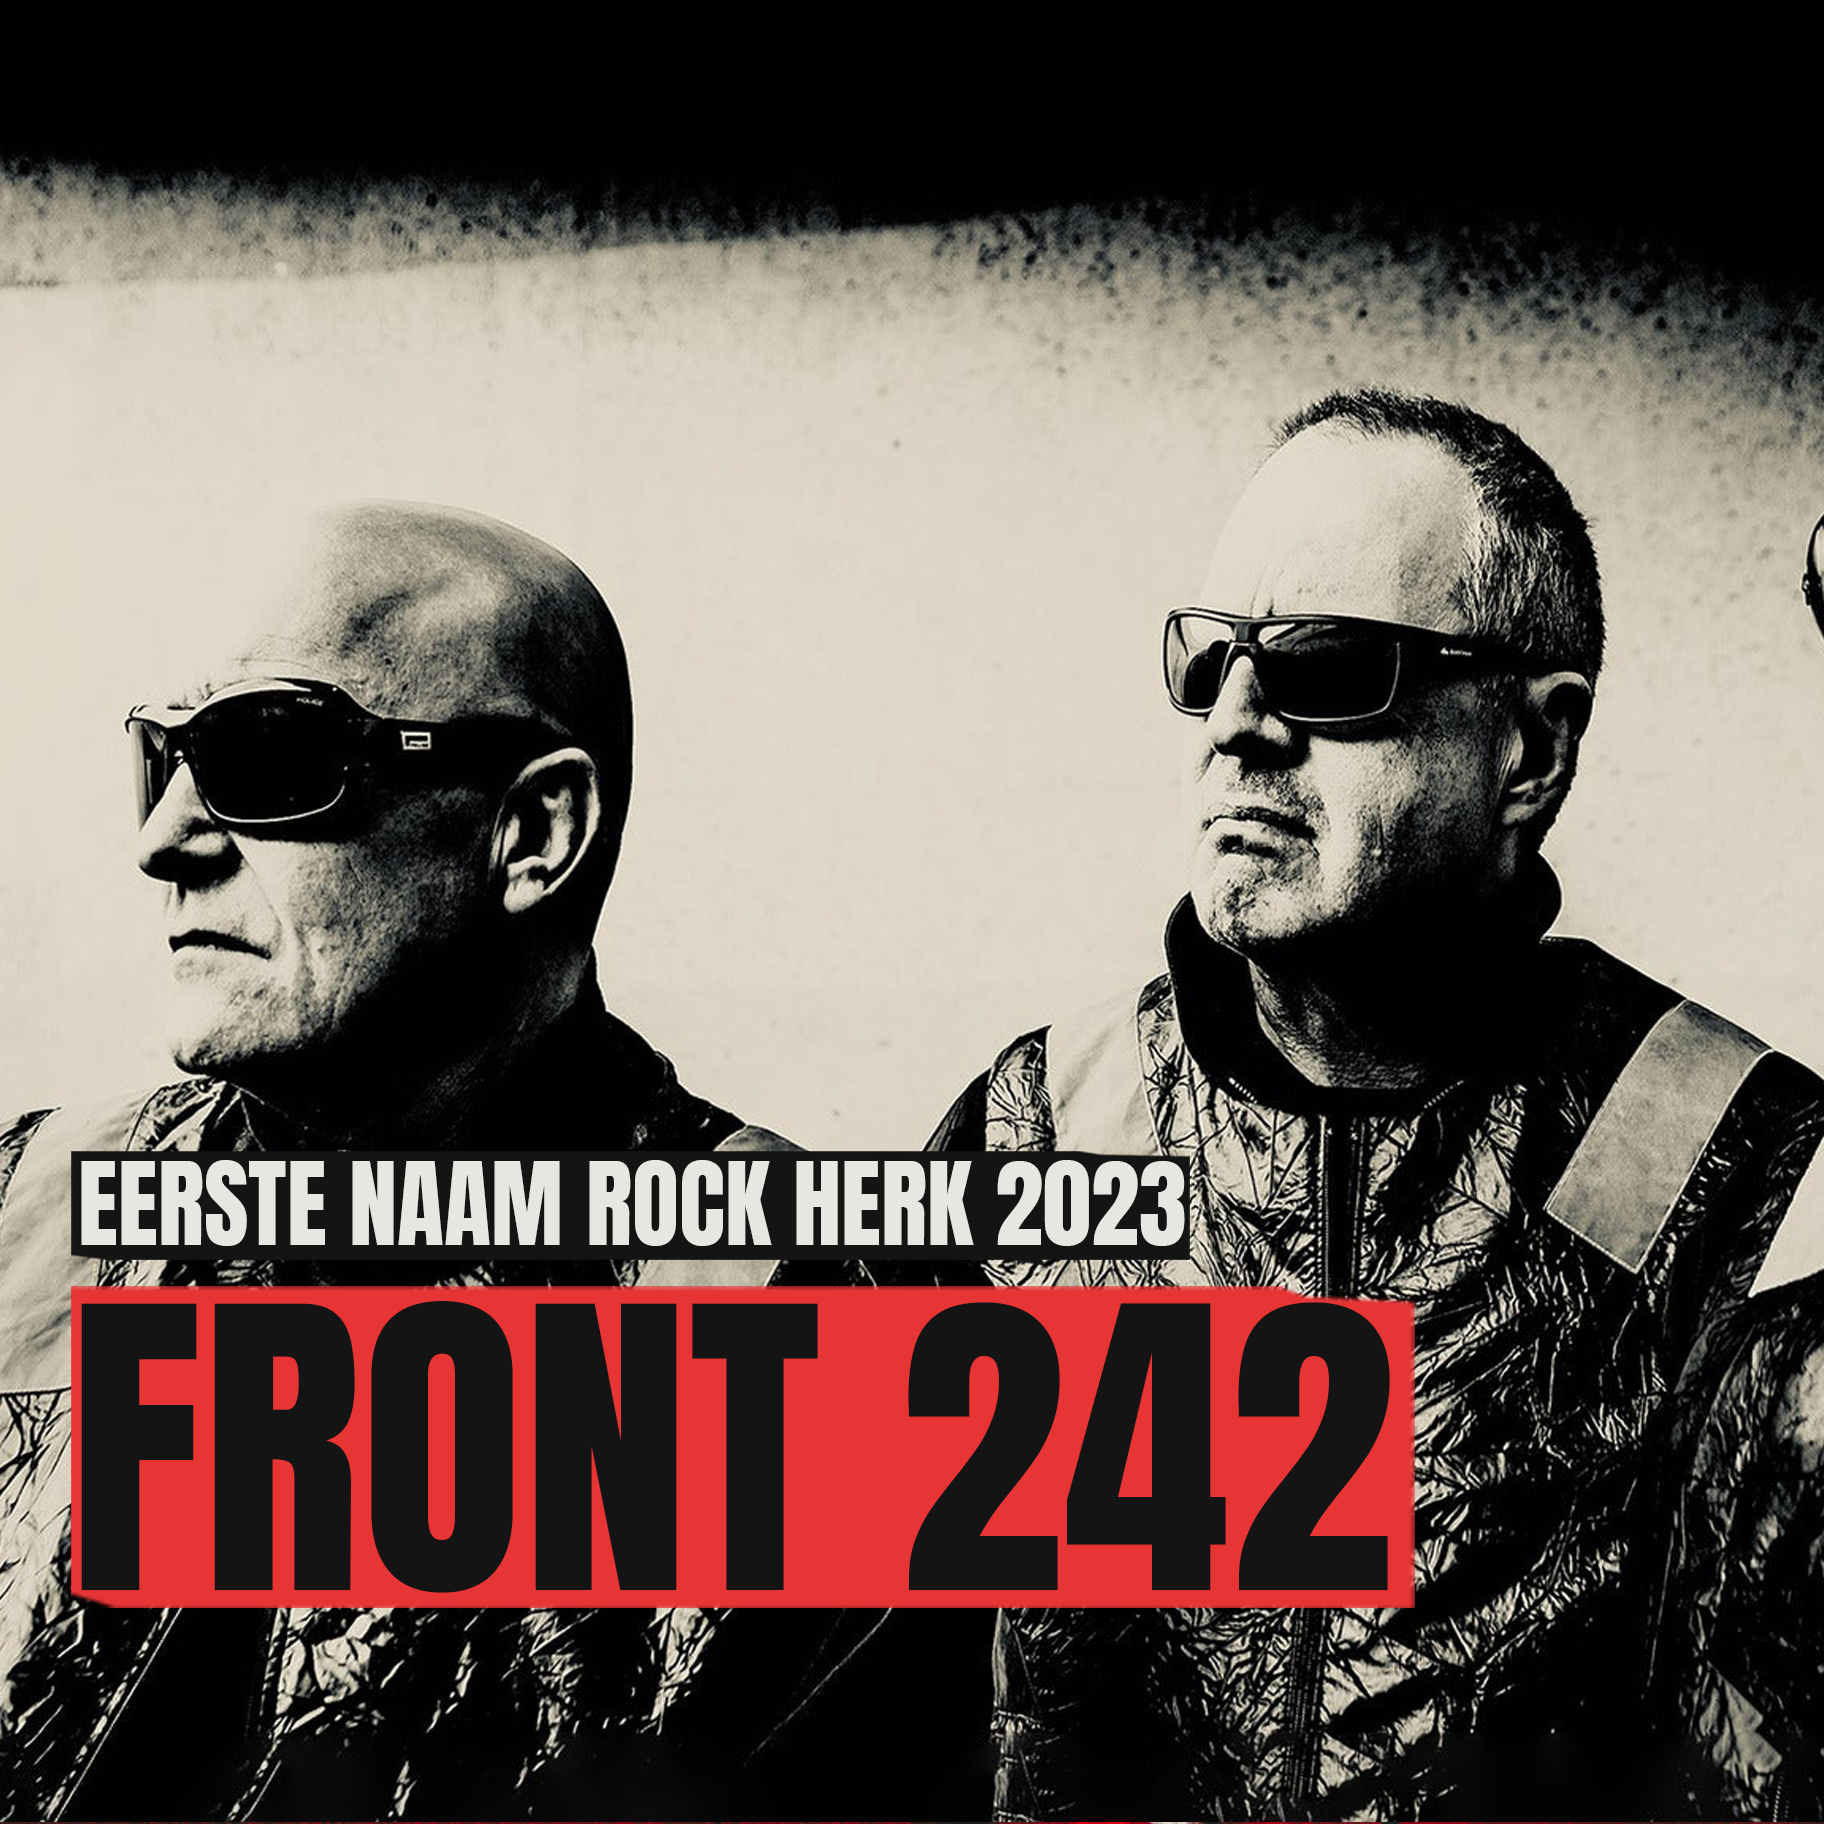 Front 242 rock herk